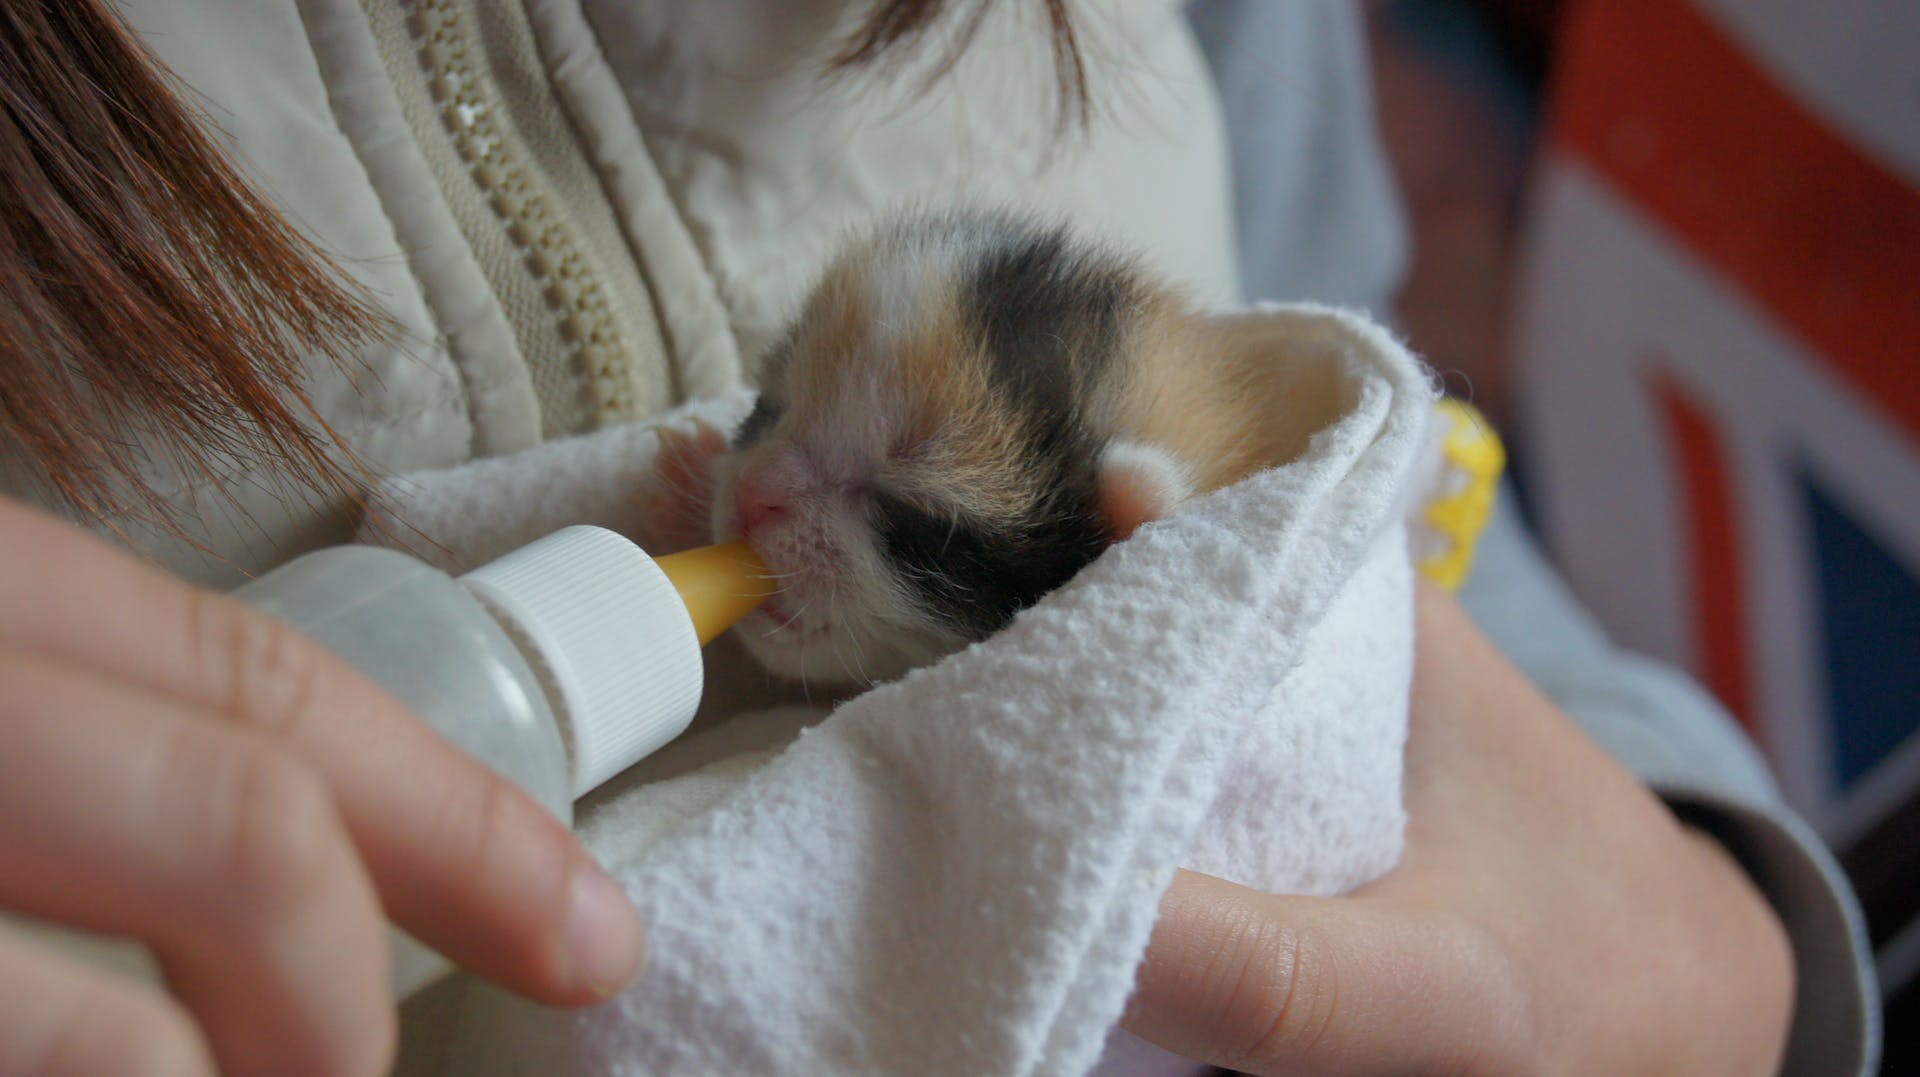 A woman bottle-feeding a kitten in a blanket